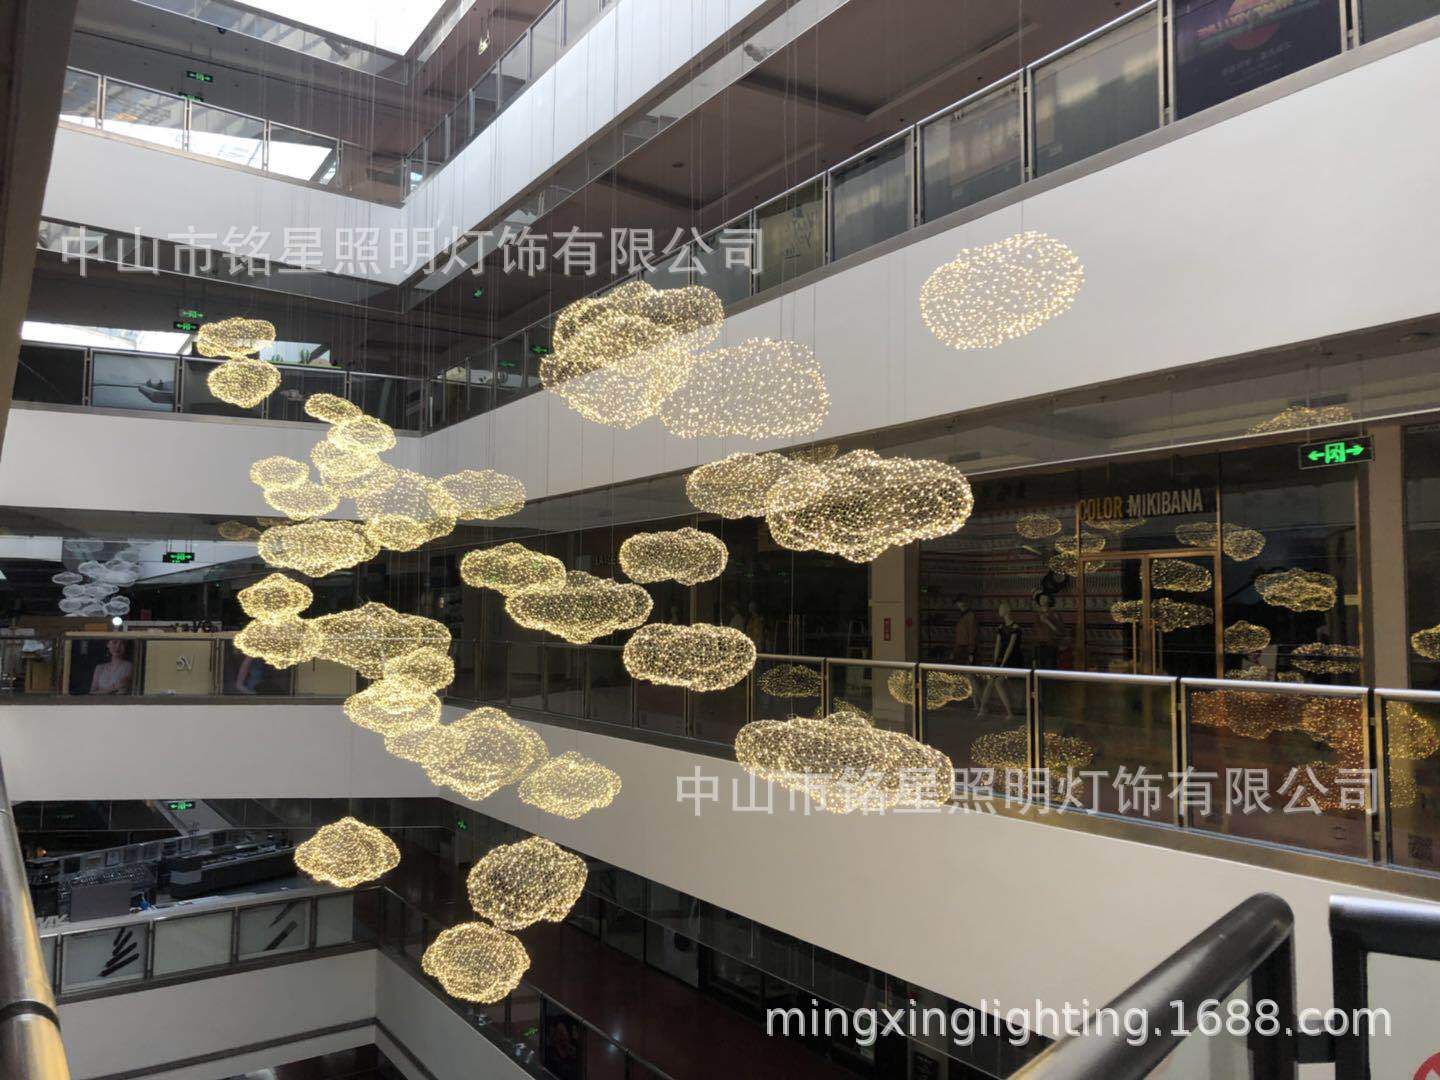 中国供应商铭星照明灯饰有限公司全新LED云朵满天星专业生产厂家示例图8